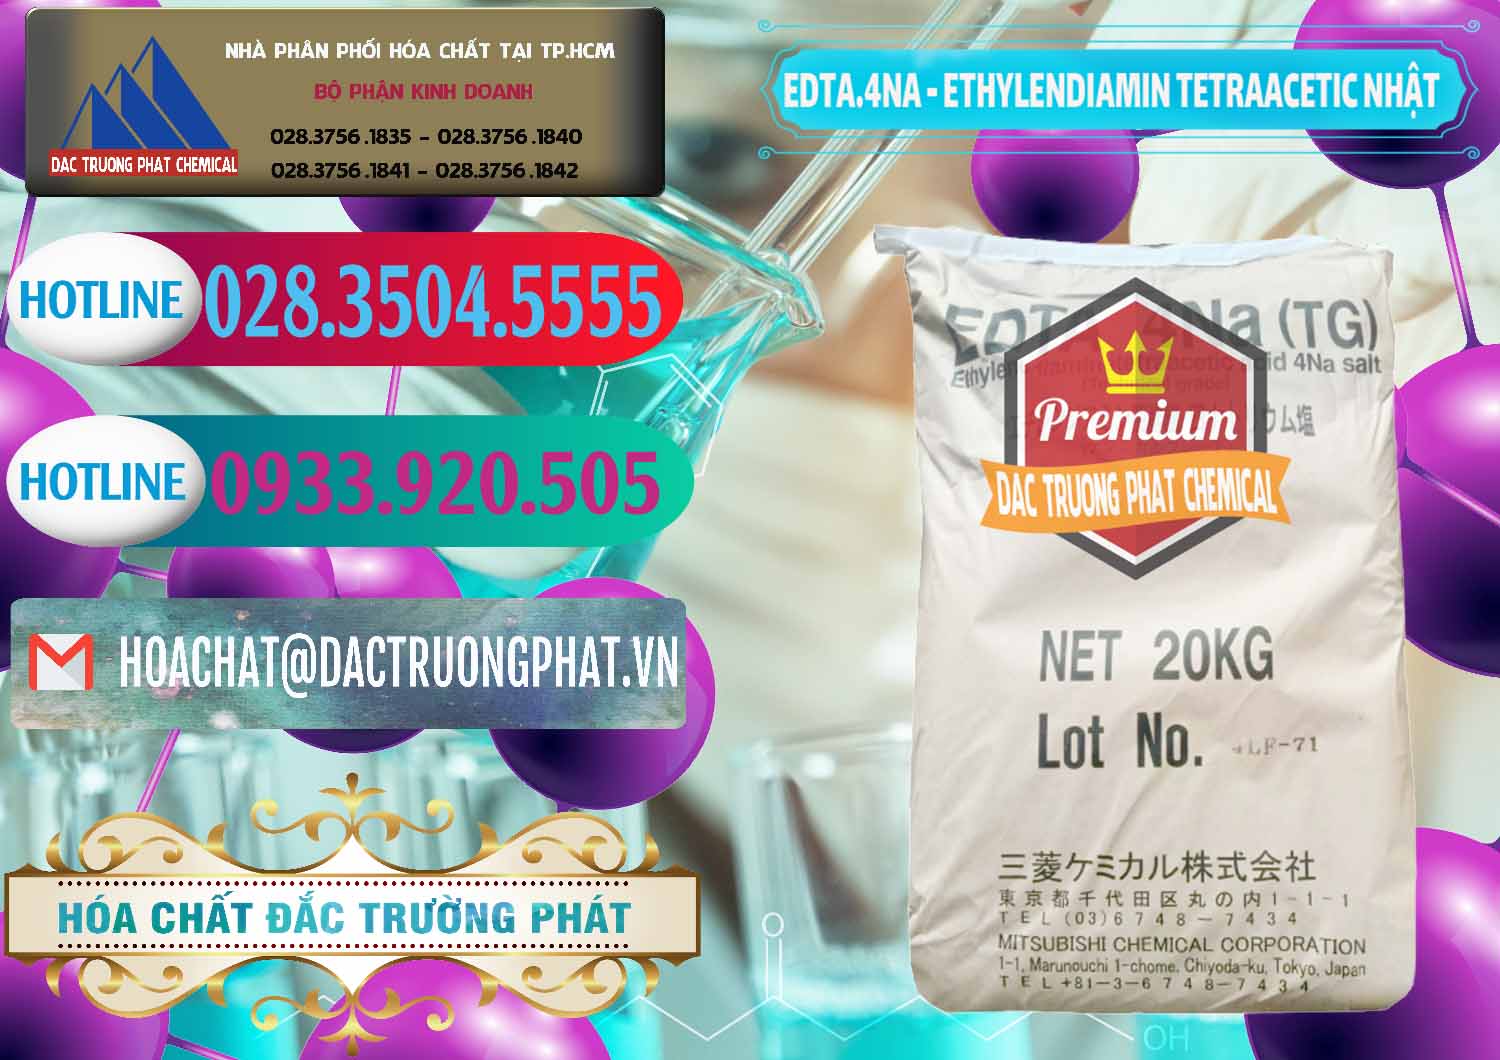 Nơi chuyên bán - cung cấp EDTA 4Na - Ethylendiamin Tetraacetic Nhật Bản Japan - 0482 - Chuyên cung cấp - phân phối hóa chất tại TP.HCM - truongphat.vn